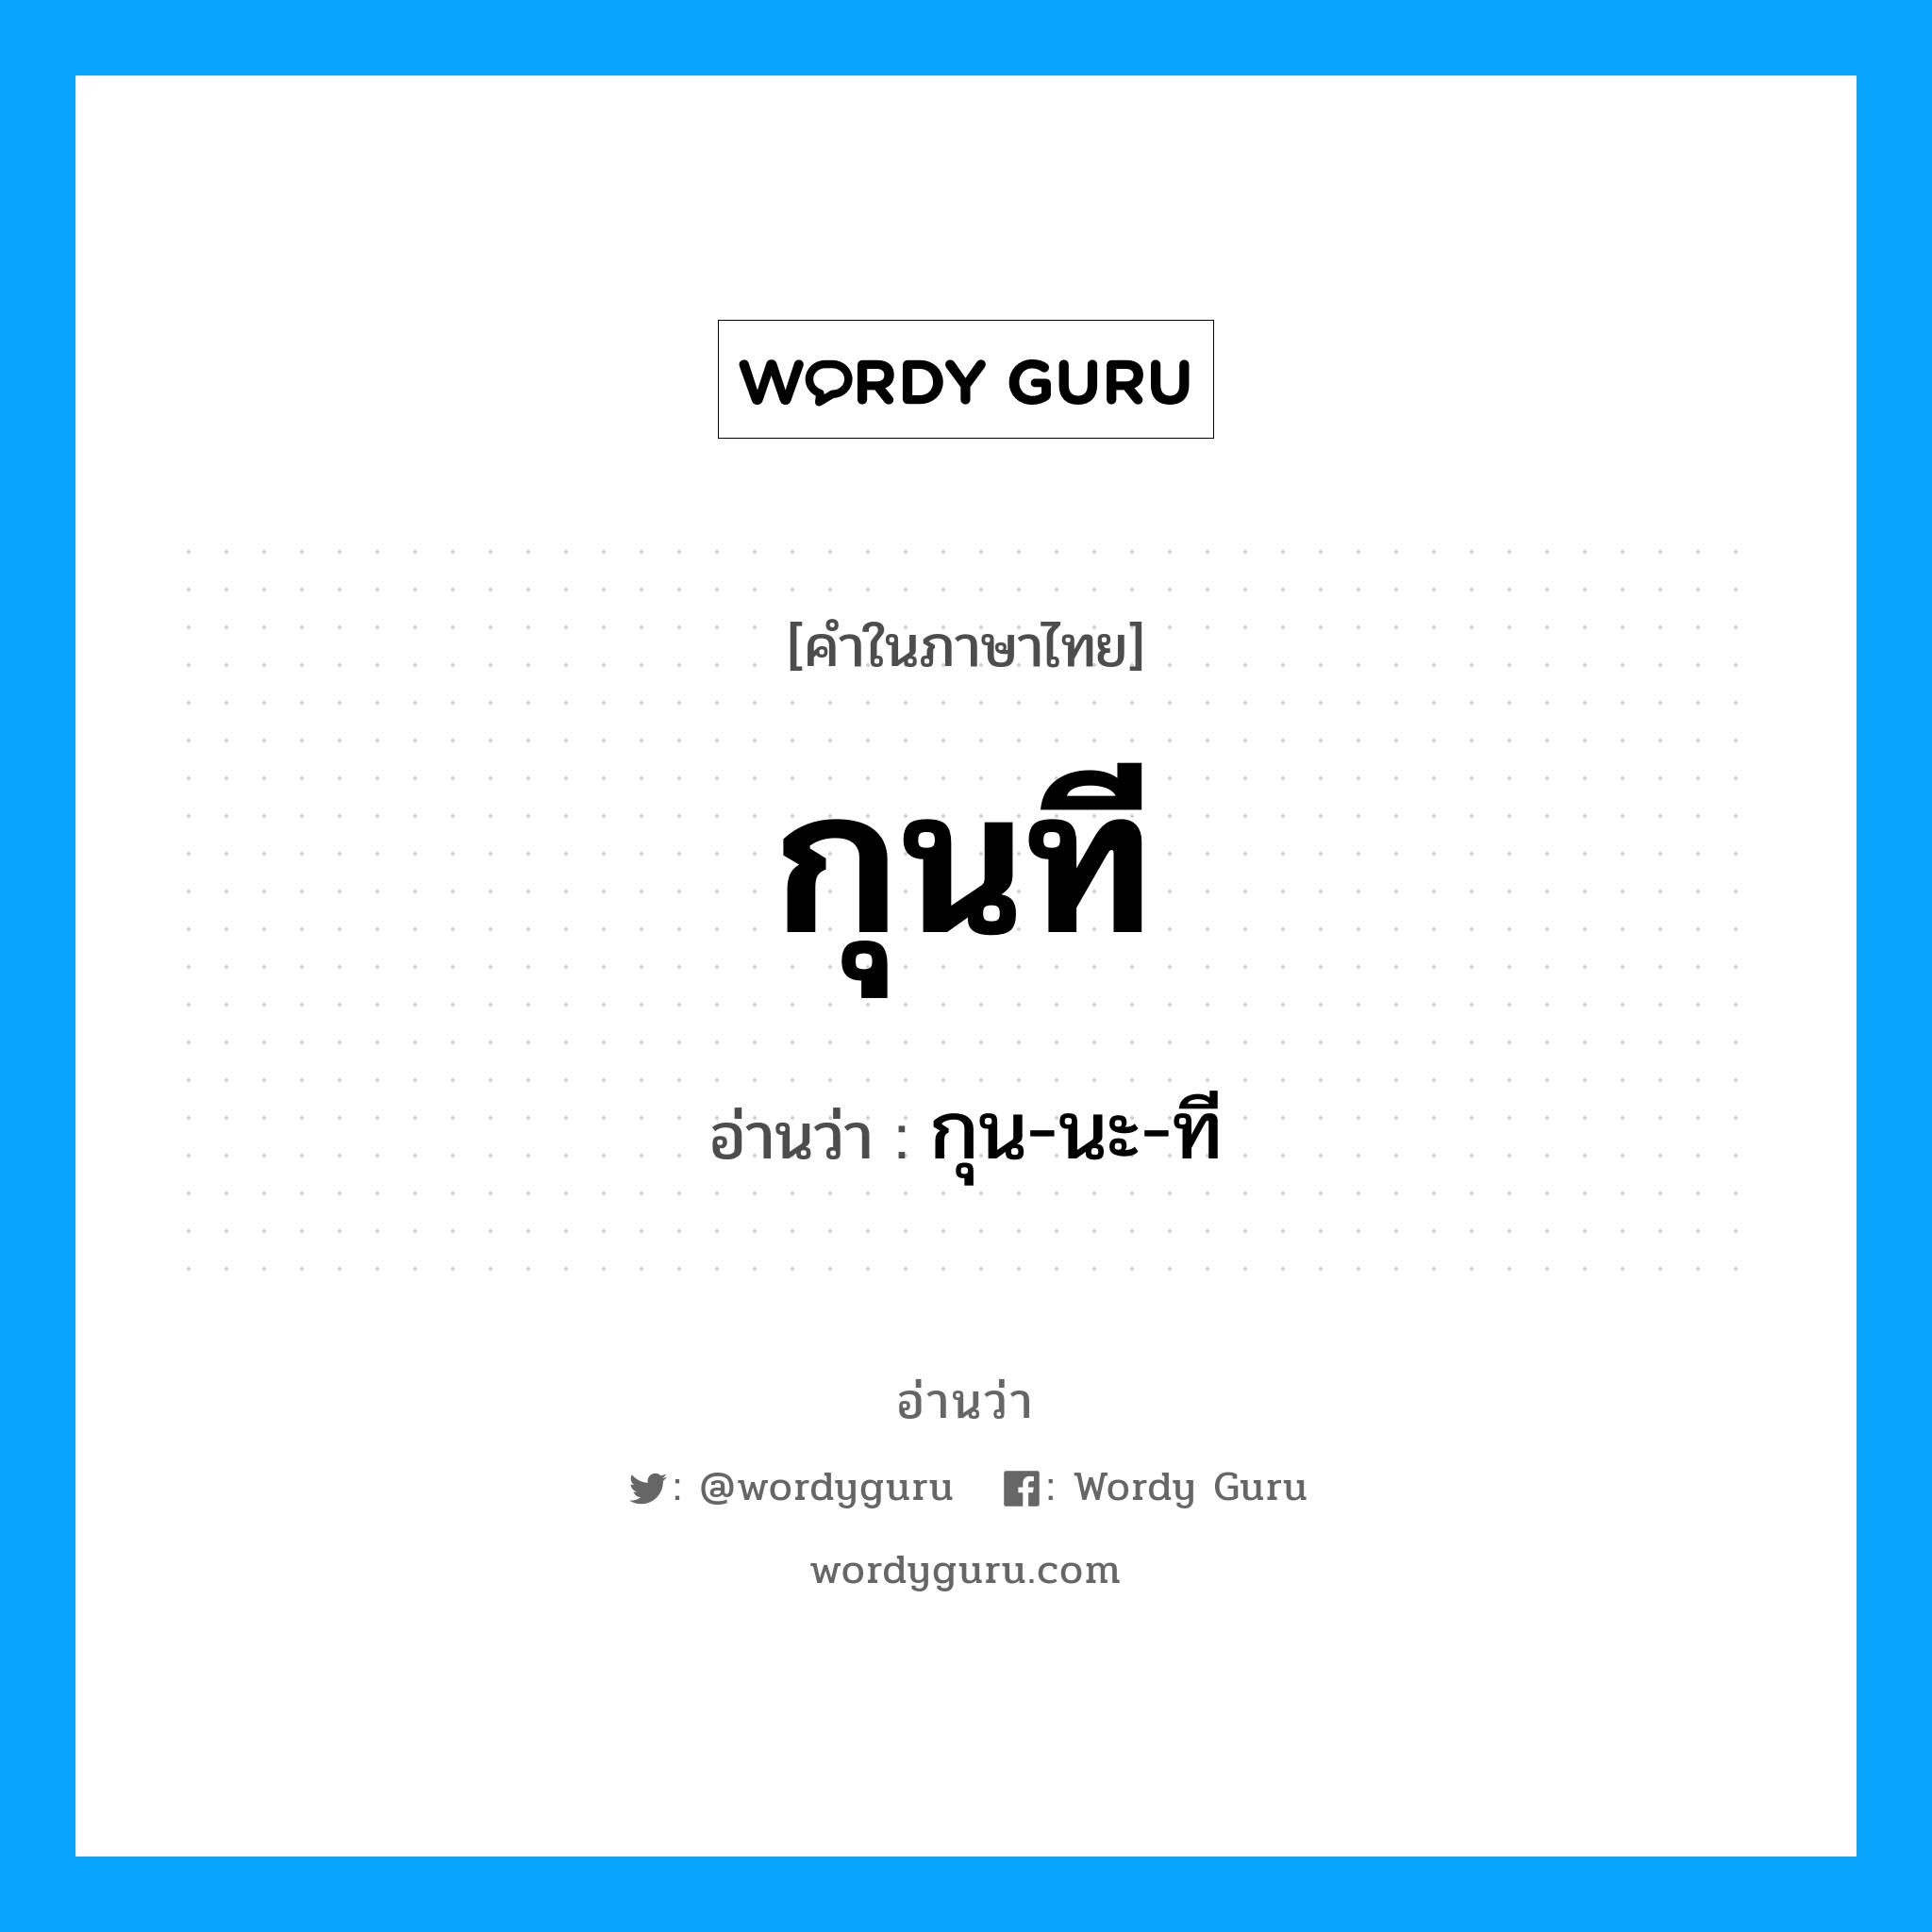 กุน-นะ-ที เป็นคำอ่านของคำไหน?, คำในภาษาไทย กุน-นะ-ที อ่านว่า กุนที